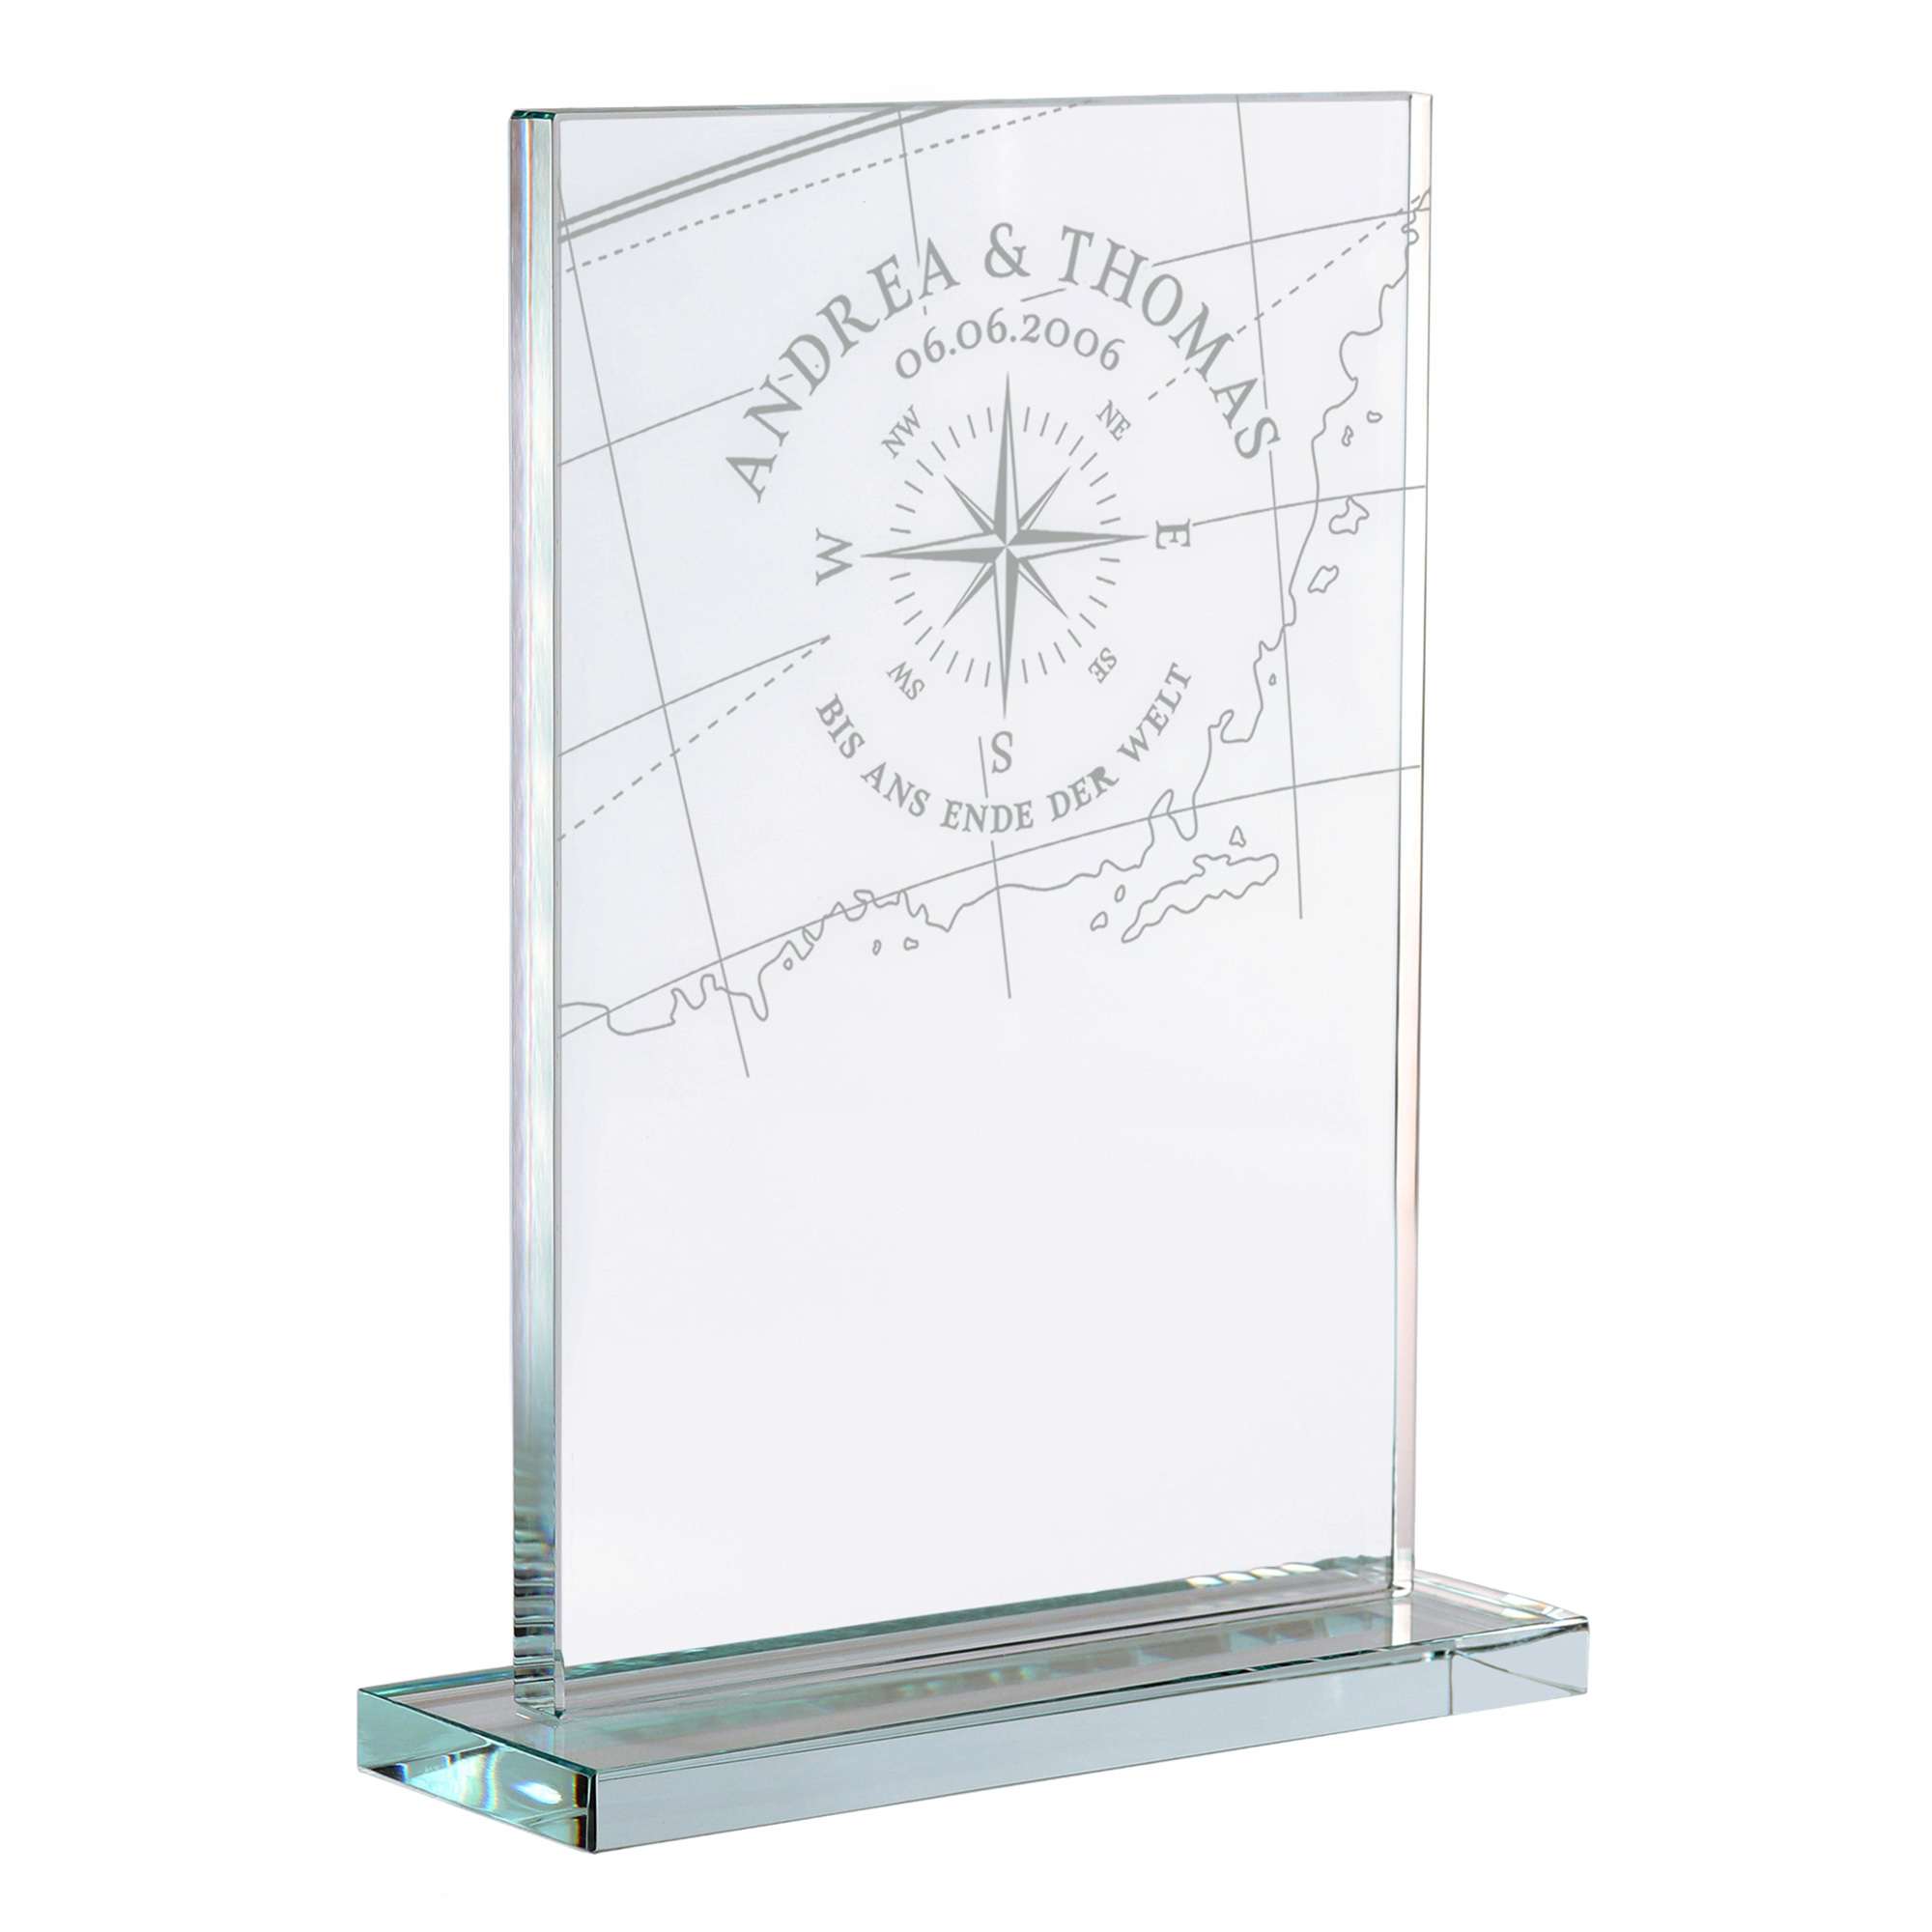 Personalisierter Glaspokal zur Hochzeit - Liebeskompass 2162-62-MZ - 5